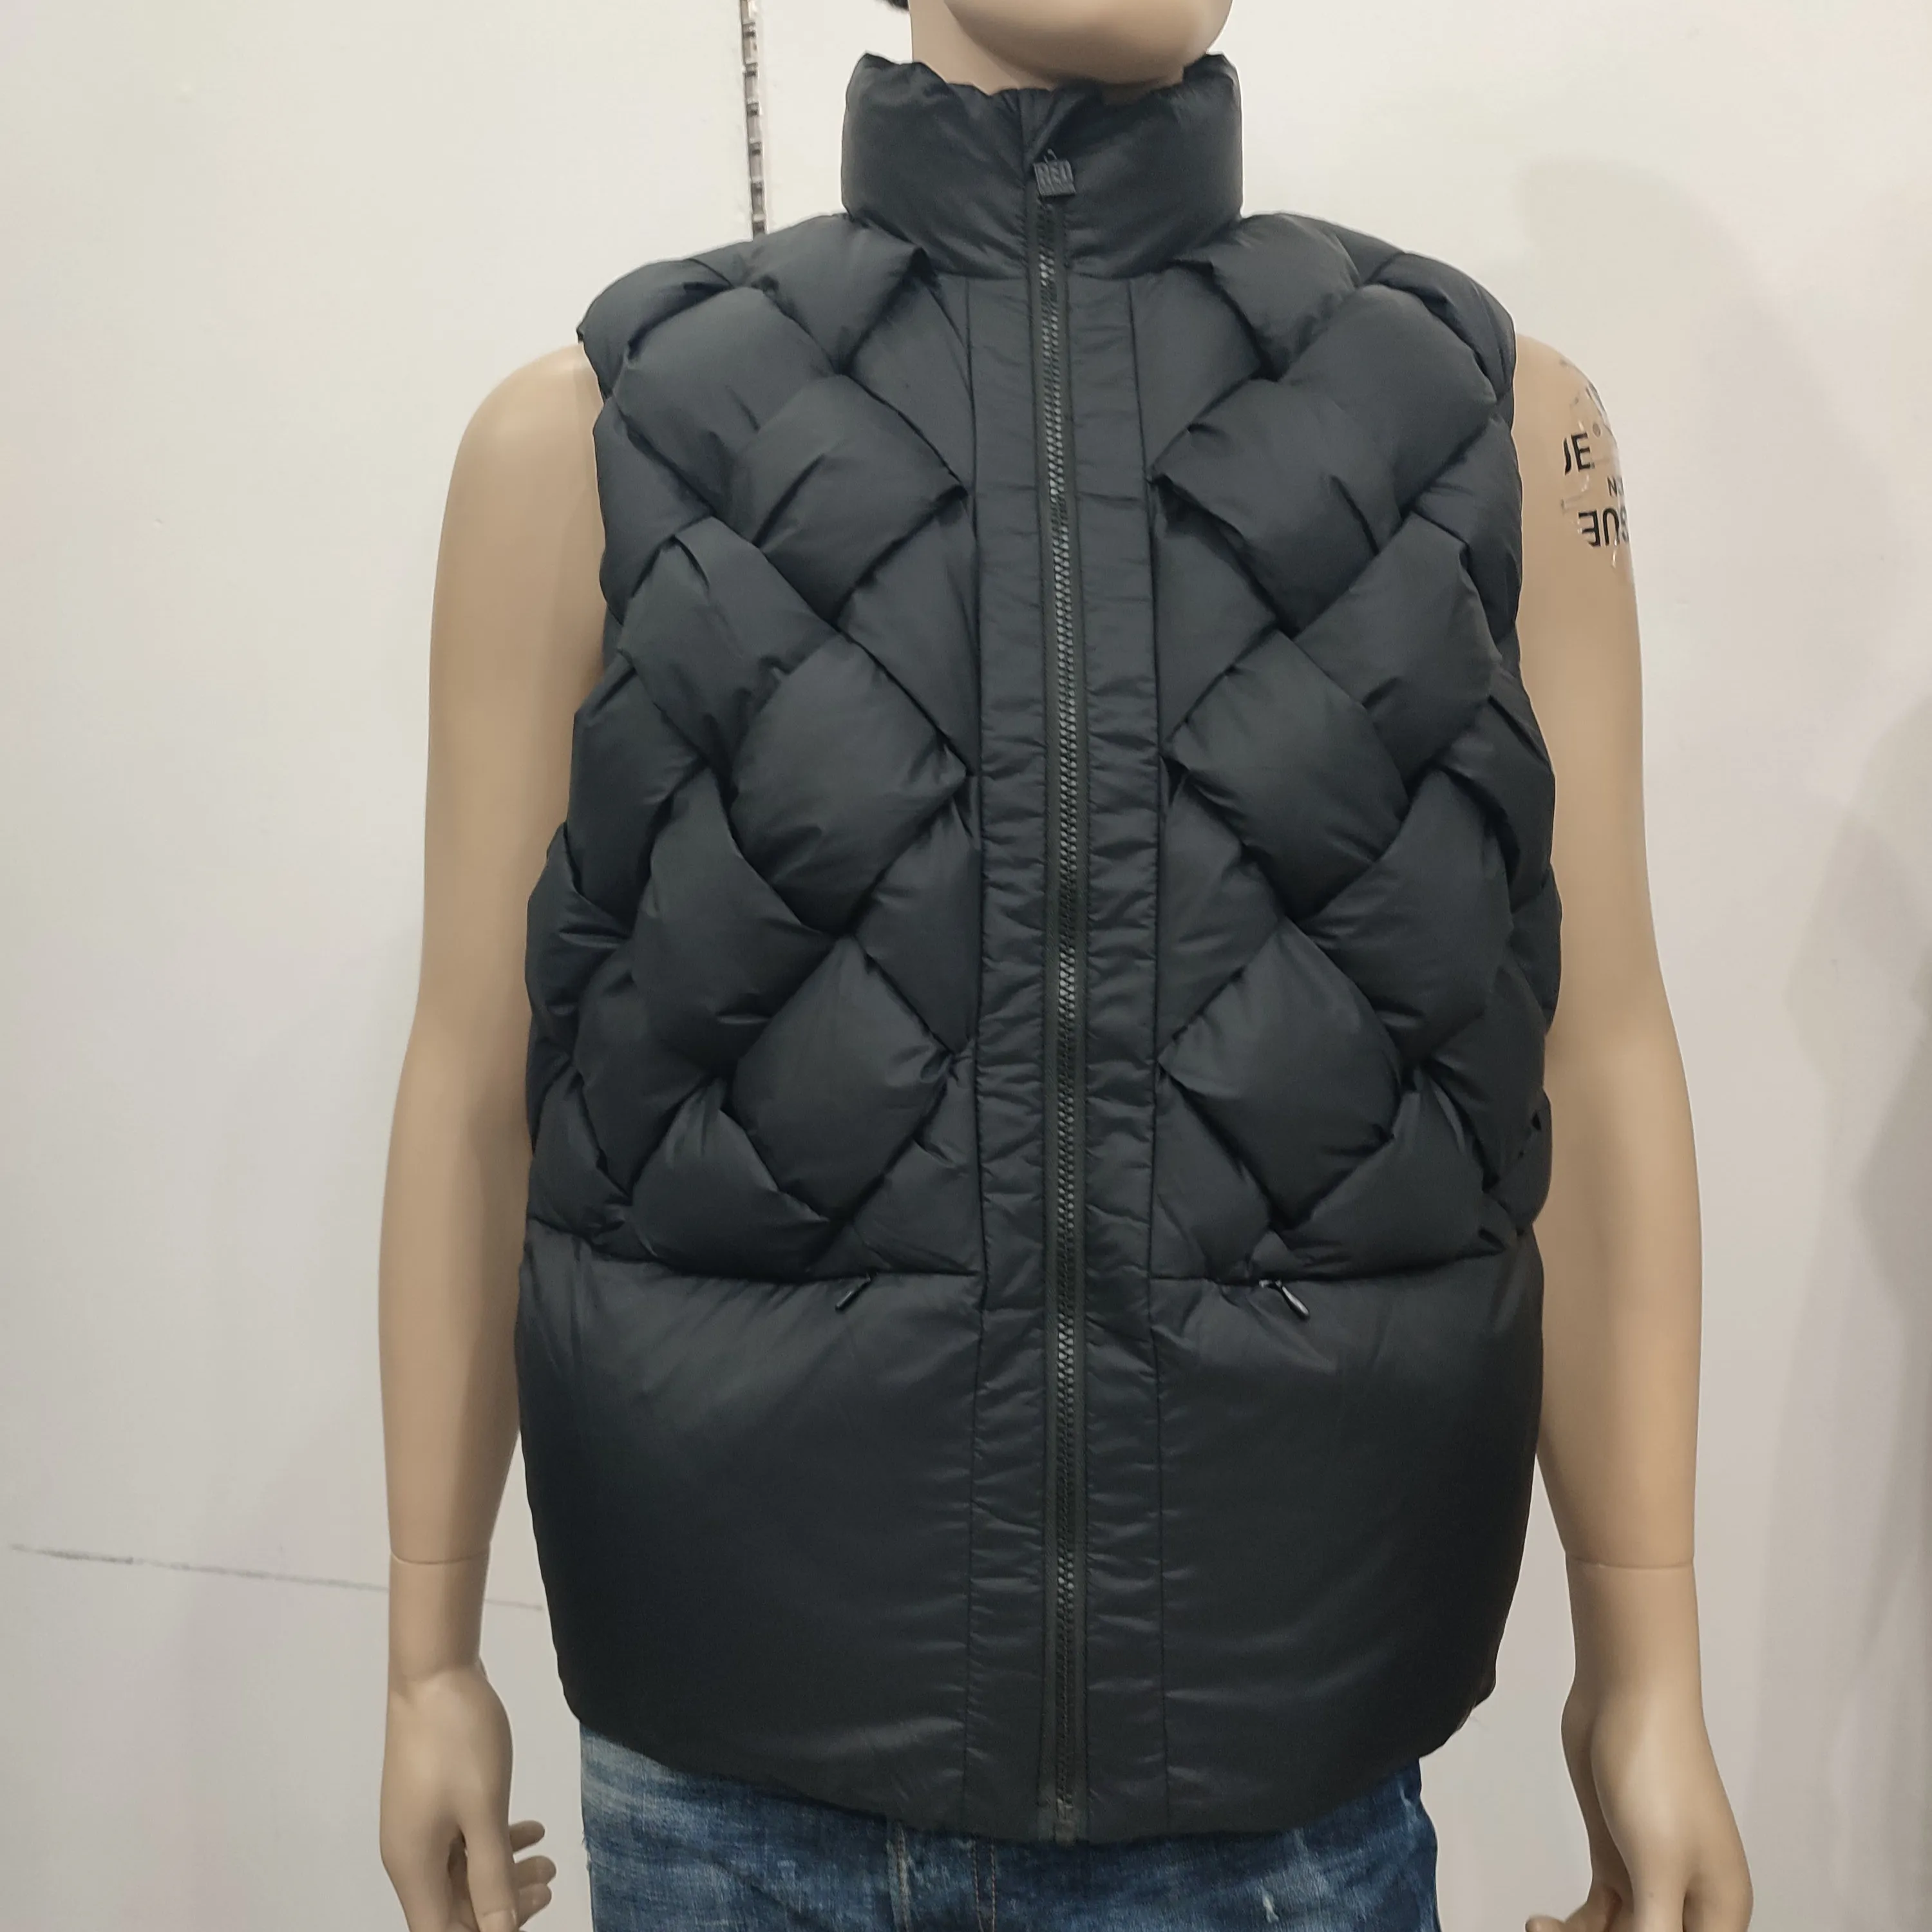 wholesale new padded down vest men bubble bodywarmer waistcoats waterproof polyester puffer jackets vests